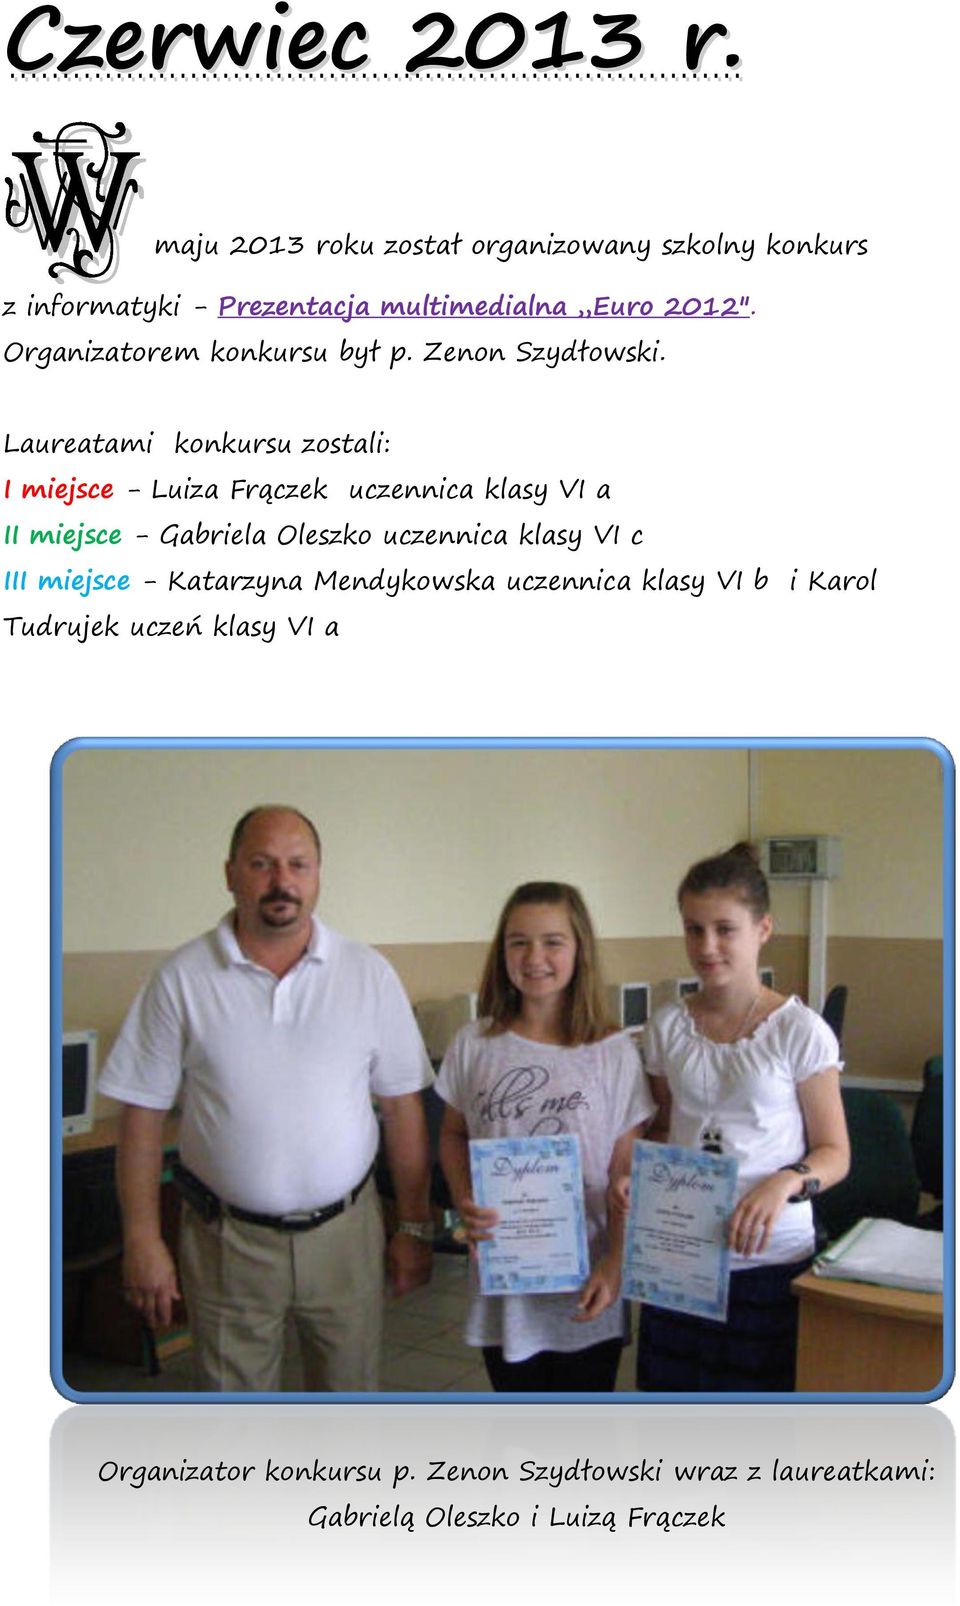 Laureatami konkursu zostali: I miejsce - Luiza Frączek uczennica klasy VI a II miejsce - Gabriela Oleszko uczennica